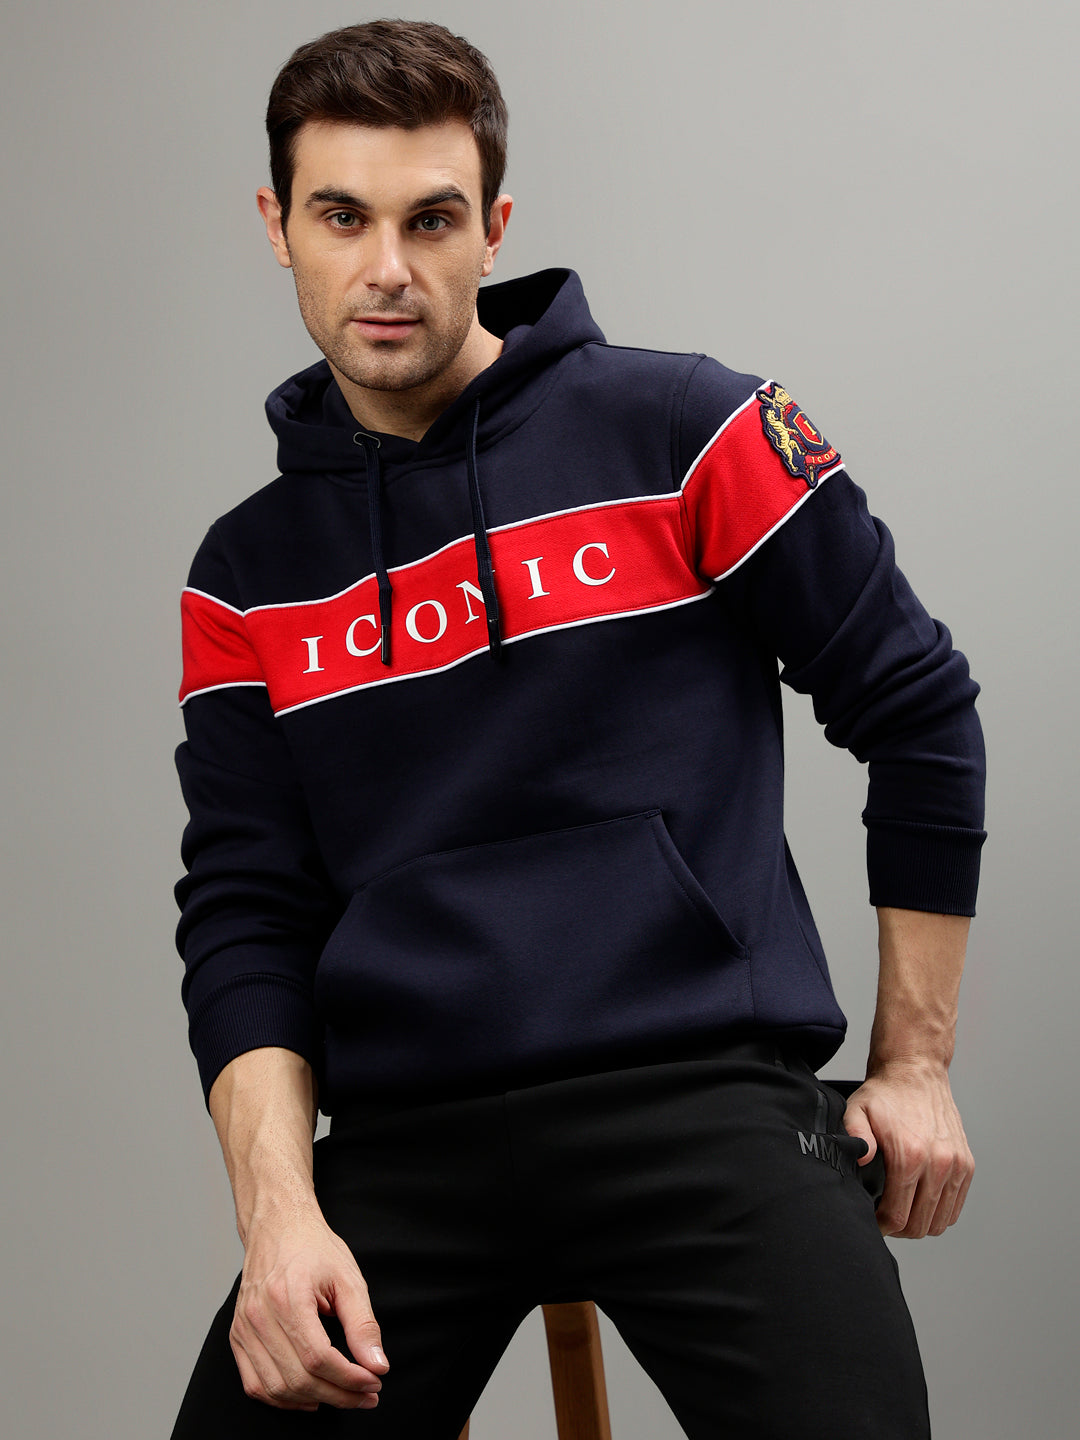 Buy Men's Hoodies & Sweatshirts Online at Upto 50% Off in India